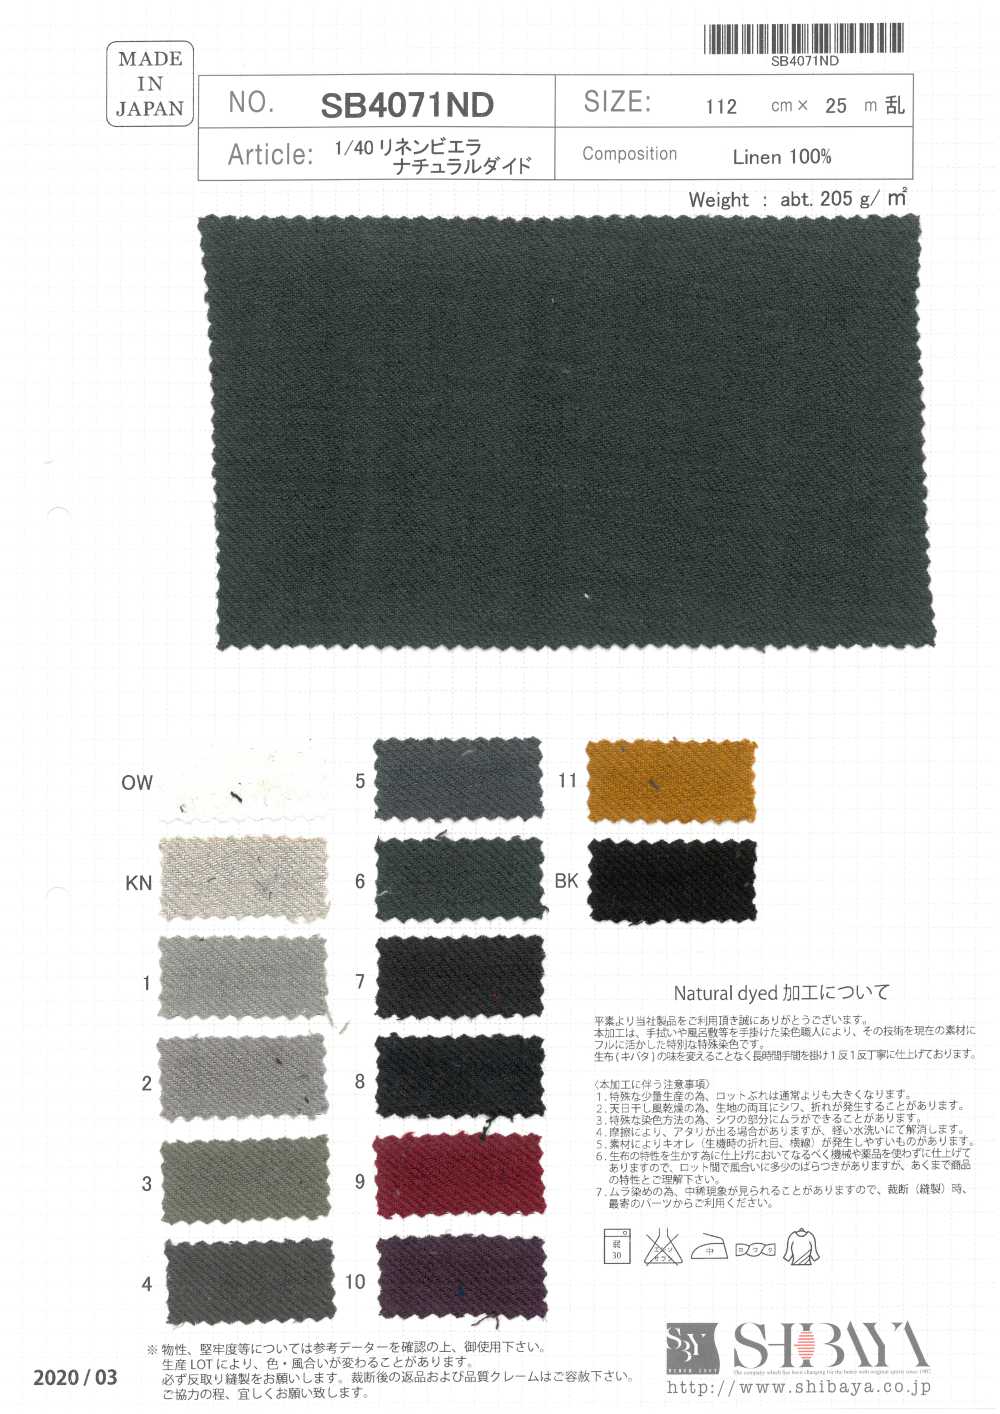 SB4071ND 1/40 Viyella Natural Tingida[Têxtil / Tecido] SHIBAYA